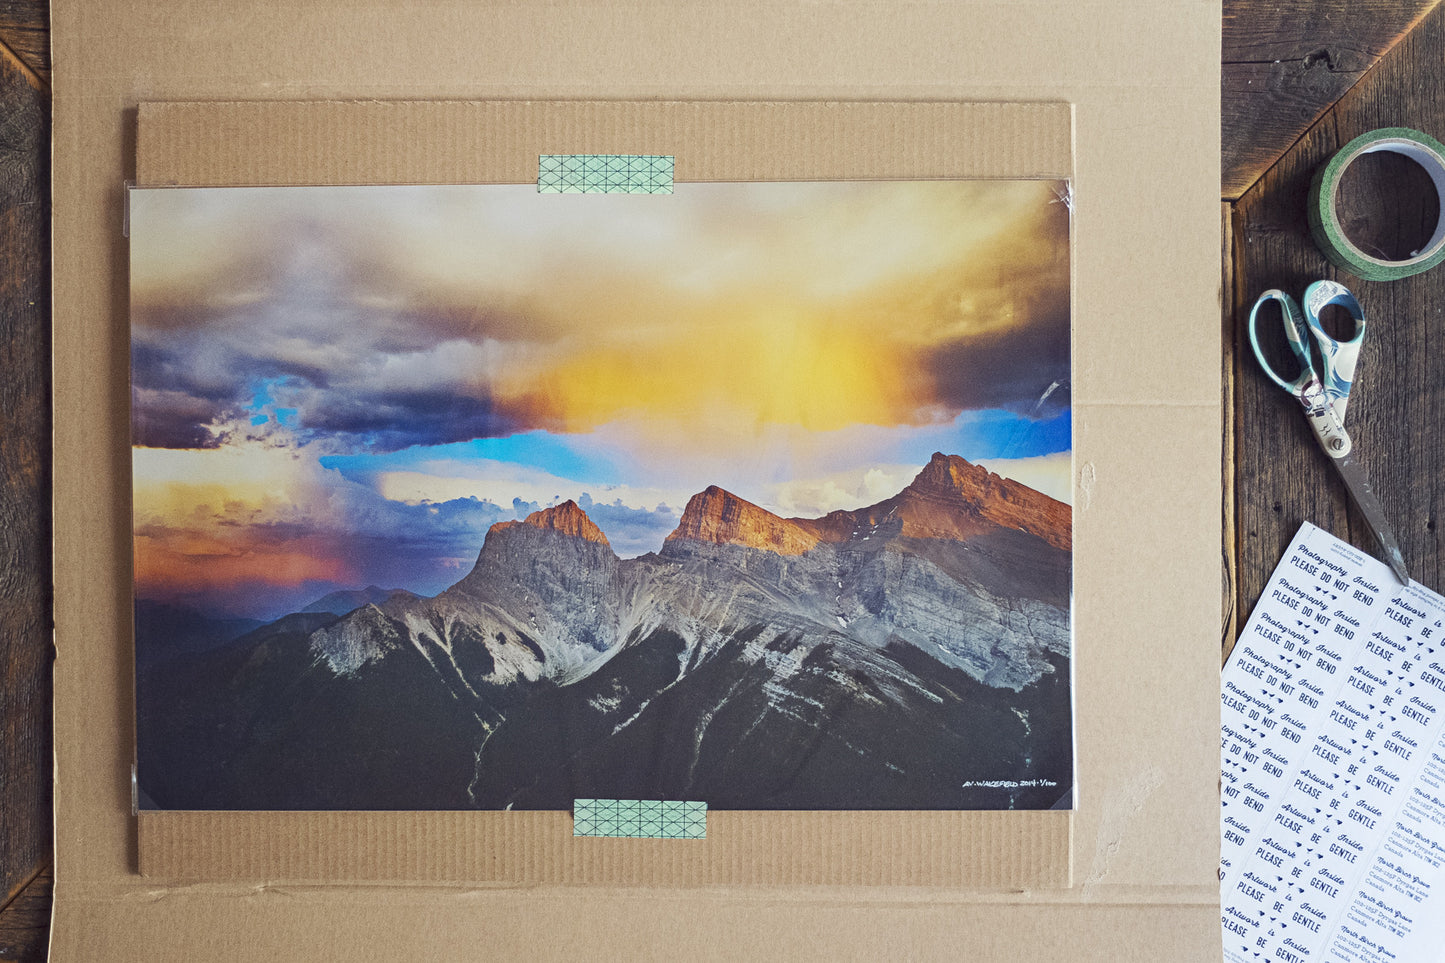 Parque Nacional Banff<br> Canadá<br> Archivo de edición limitada <br>Impresión cromogénica de bellas artes